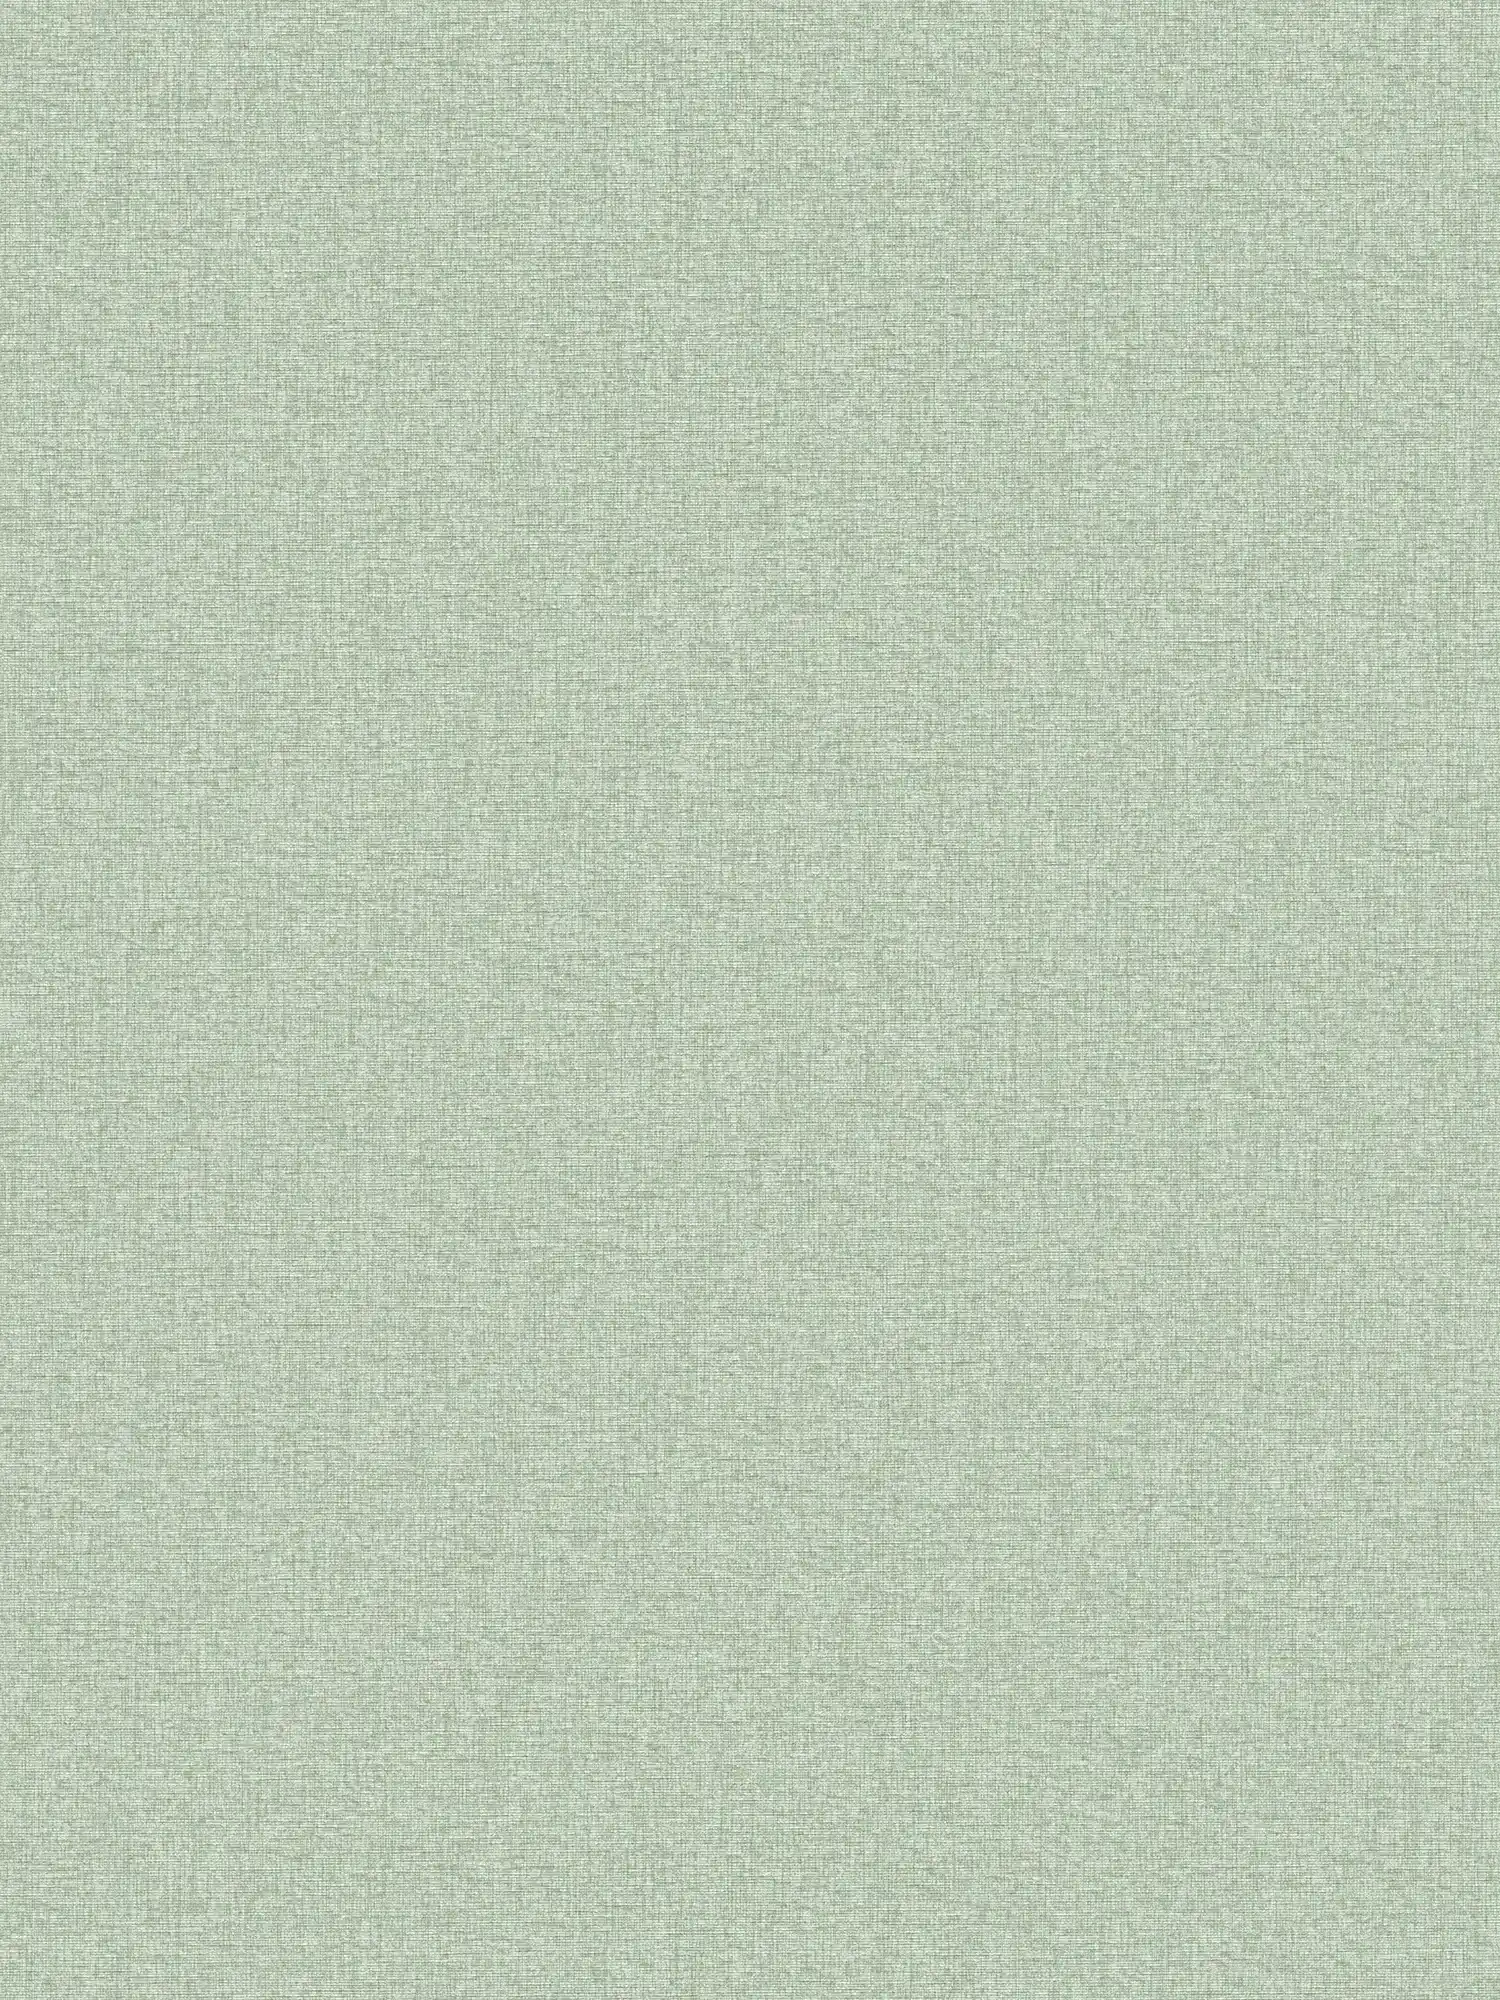 Papel pintado liso de aspecto textil con estructura ligera, mate - verde
